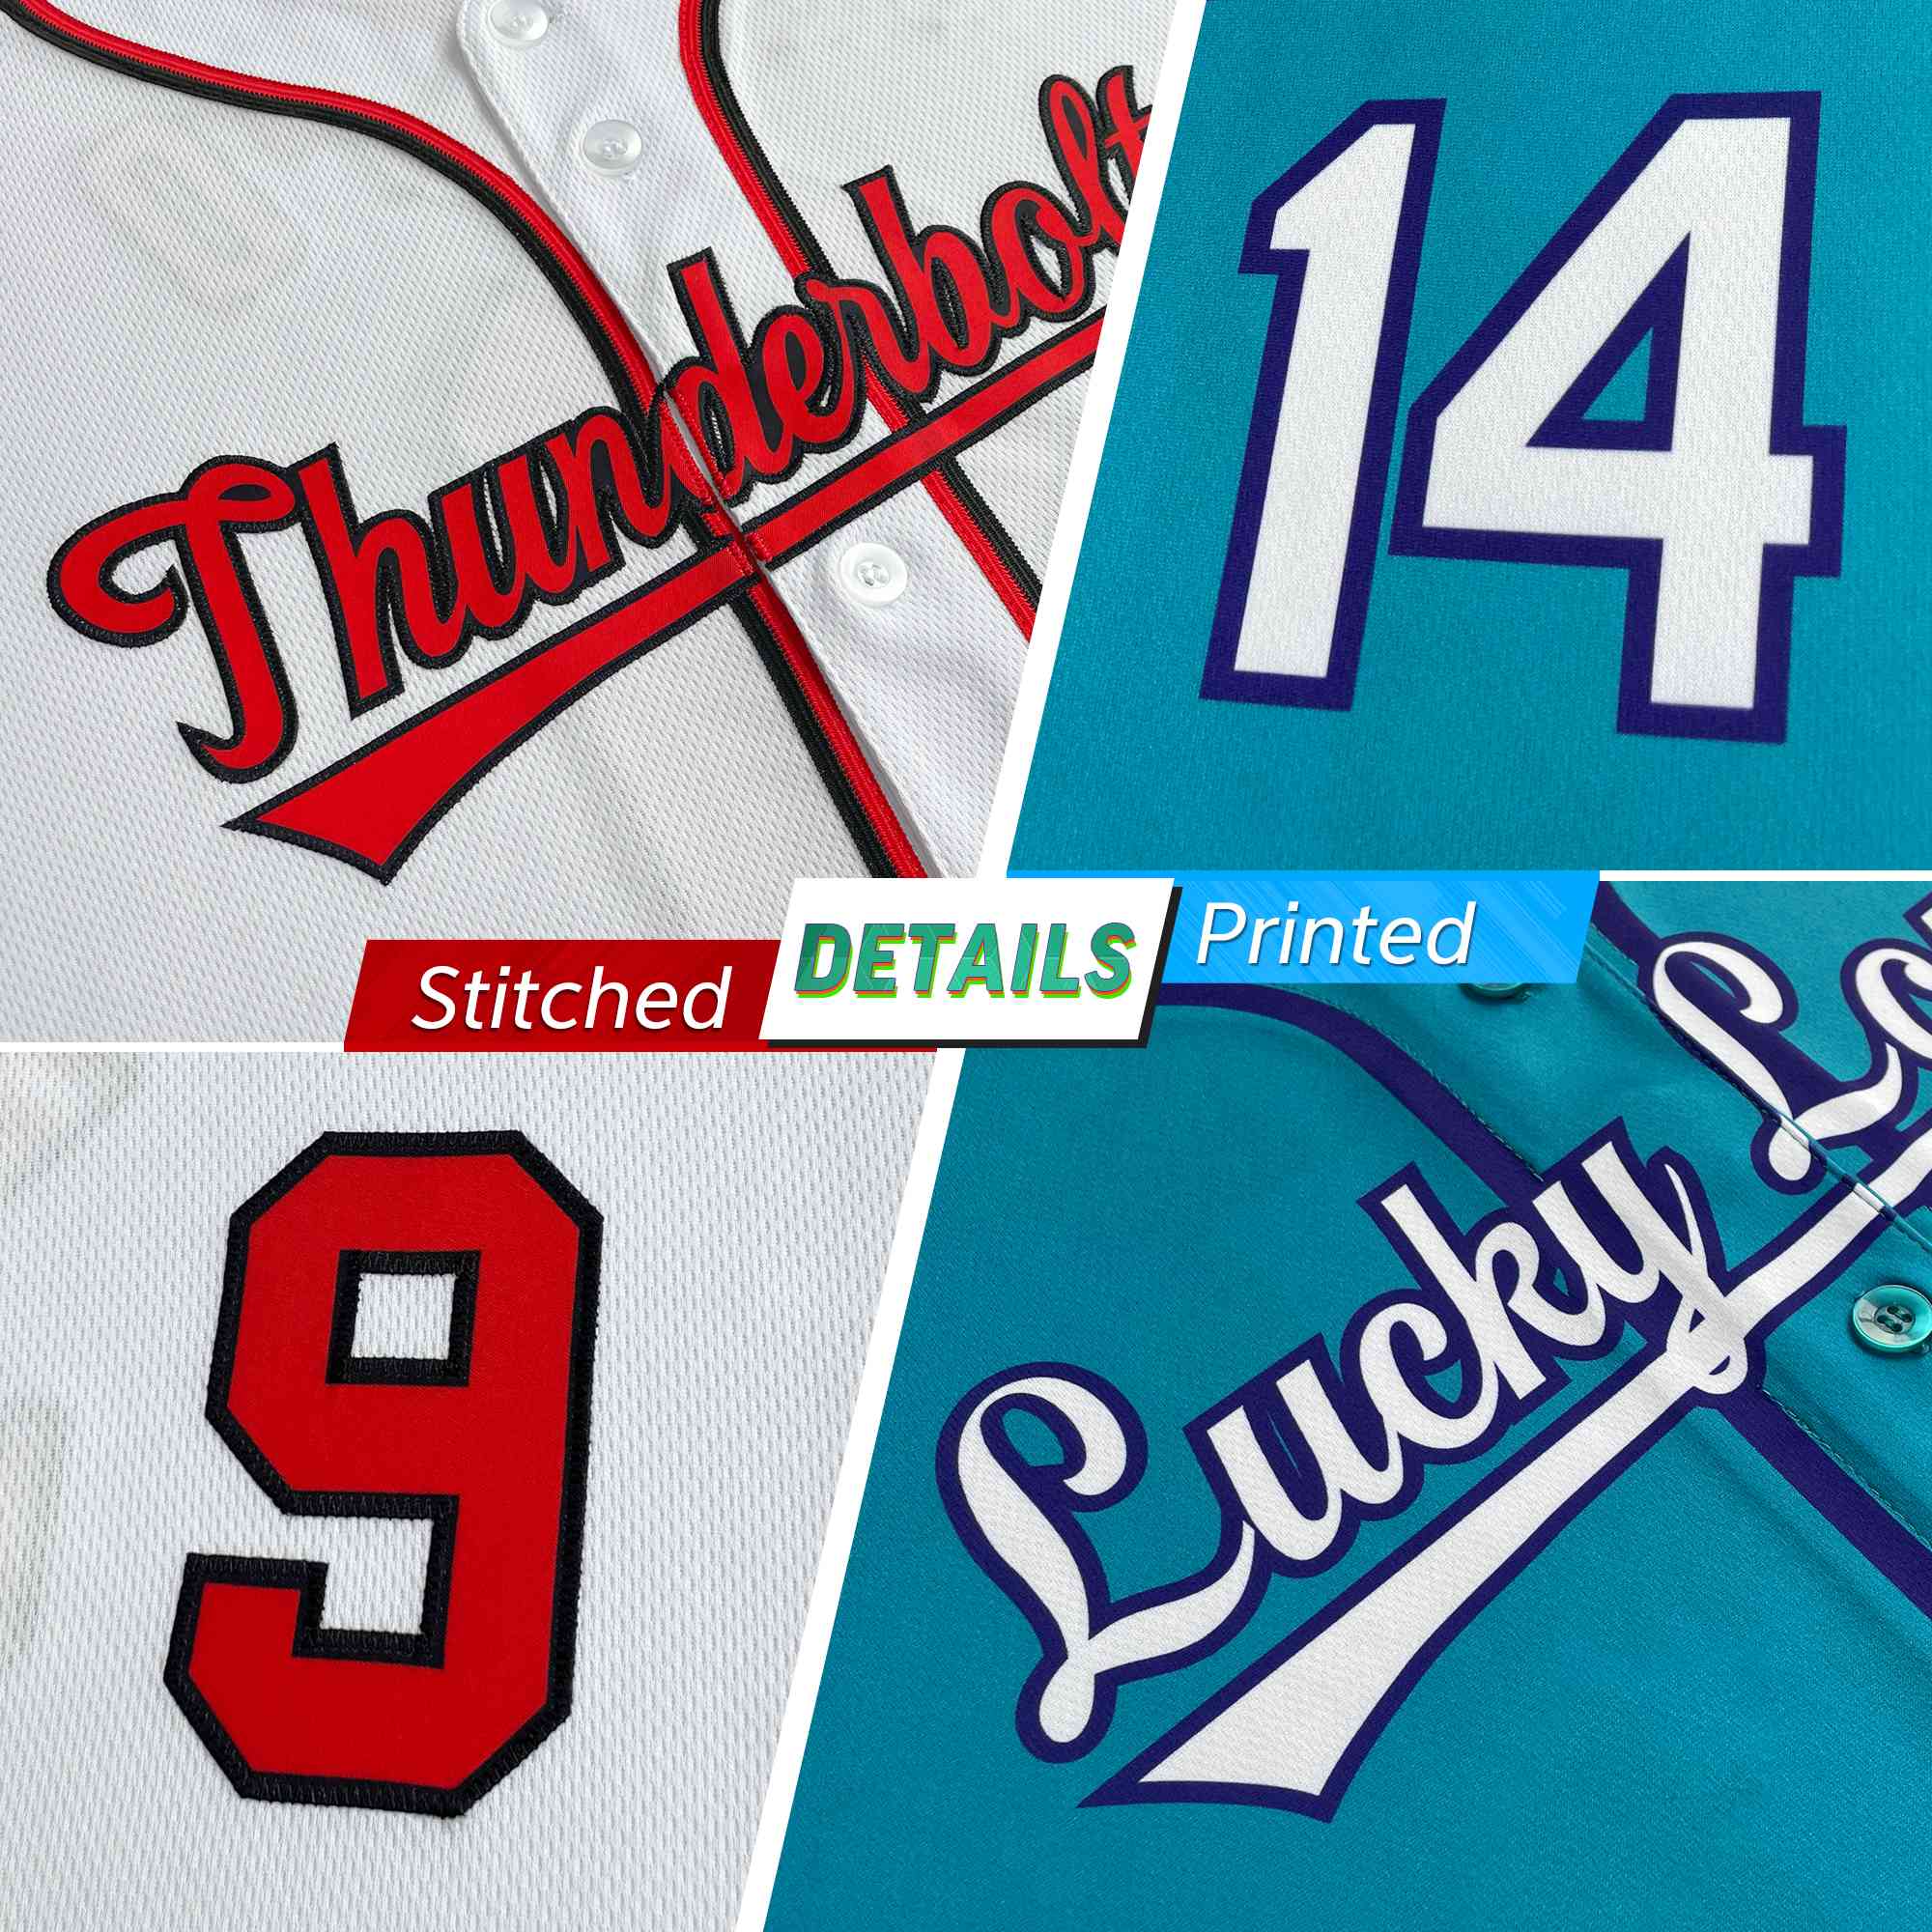 stitched baseball jersey detail